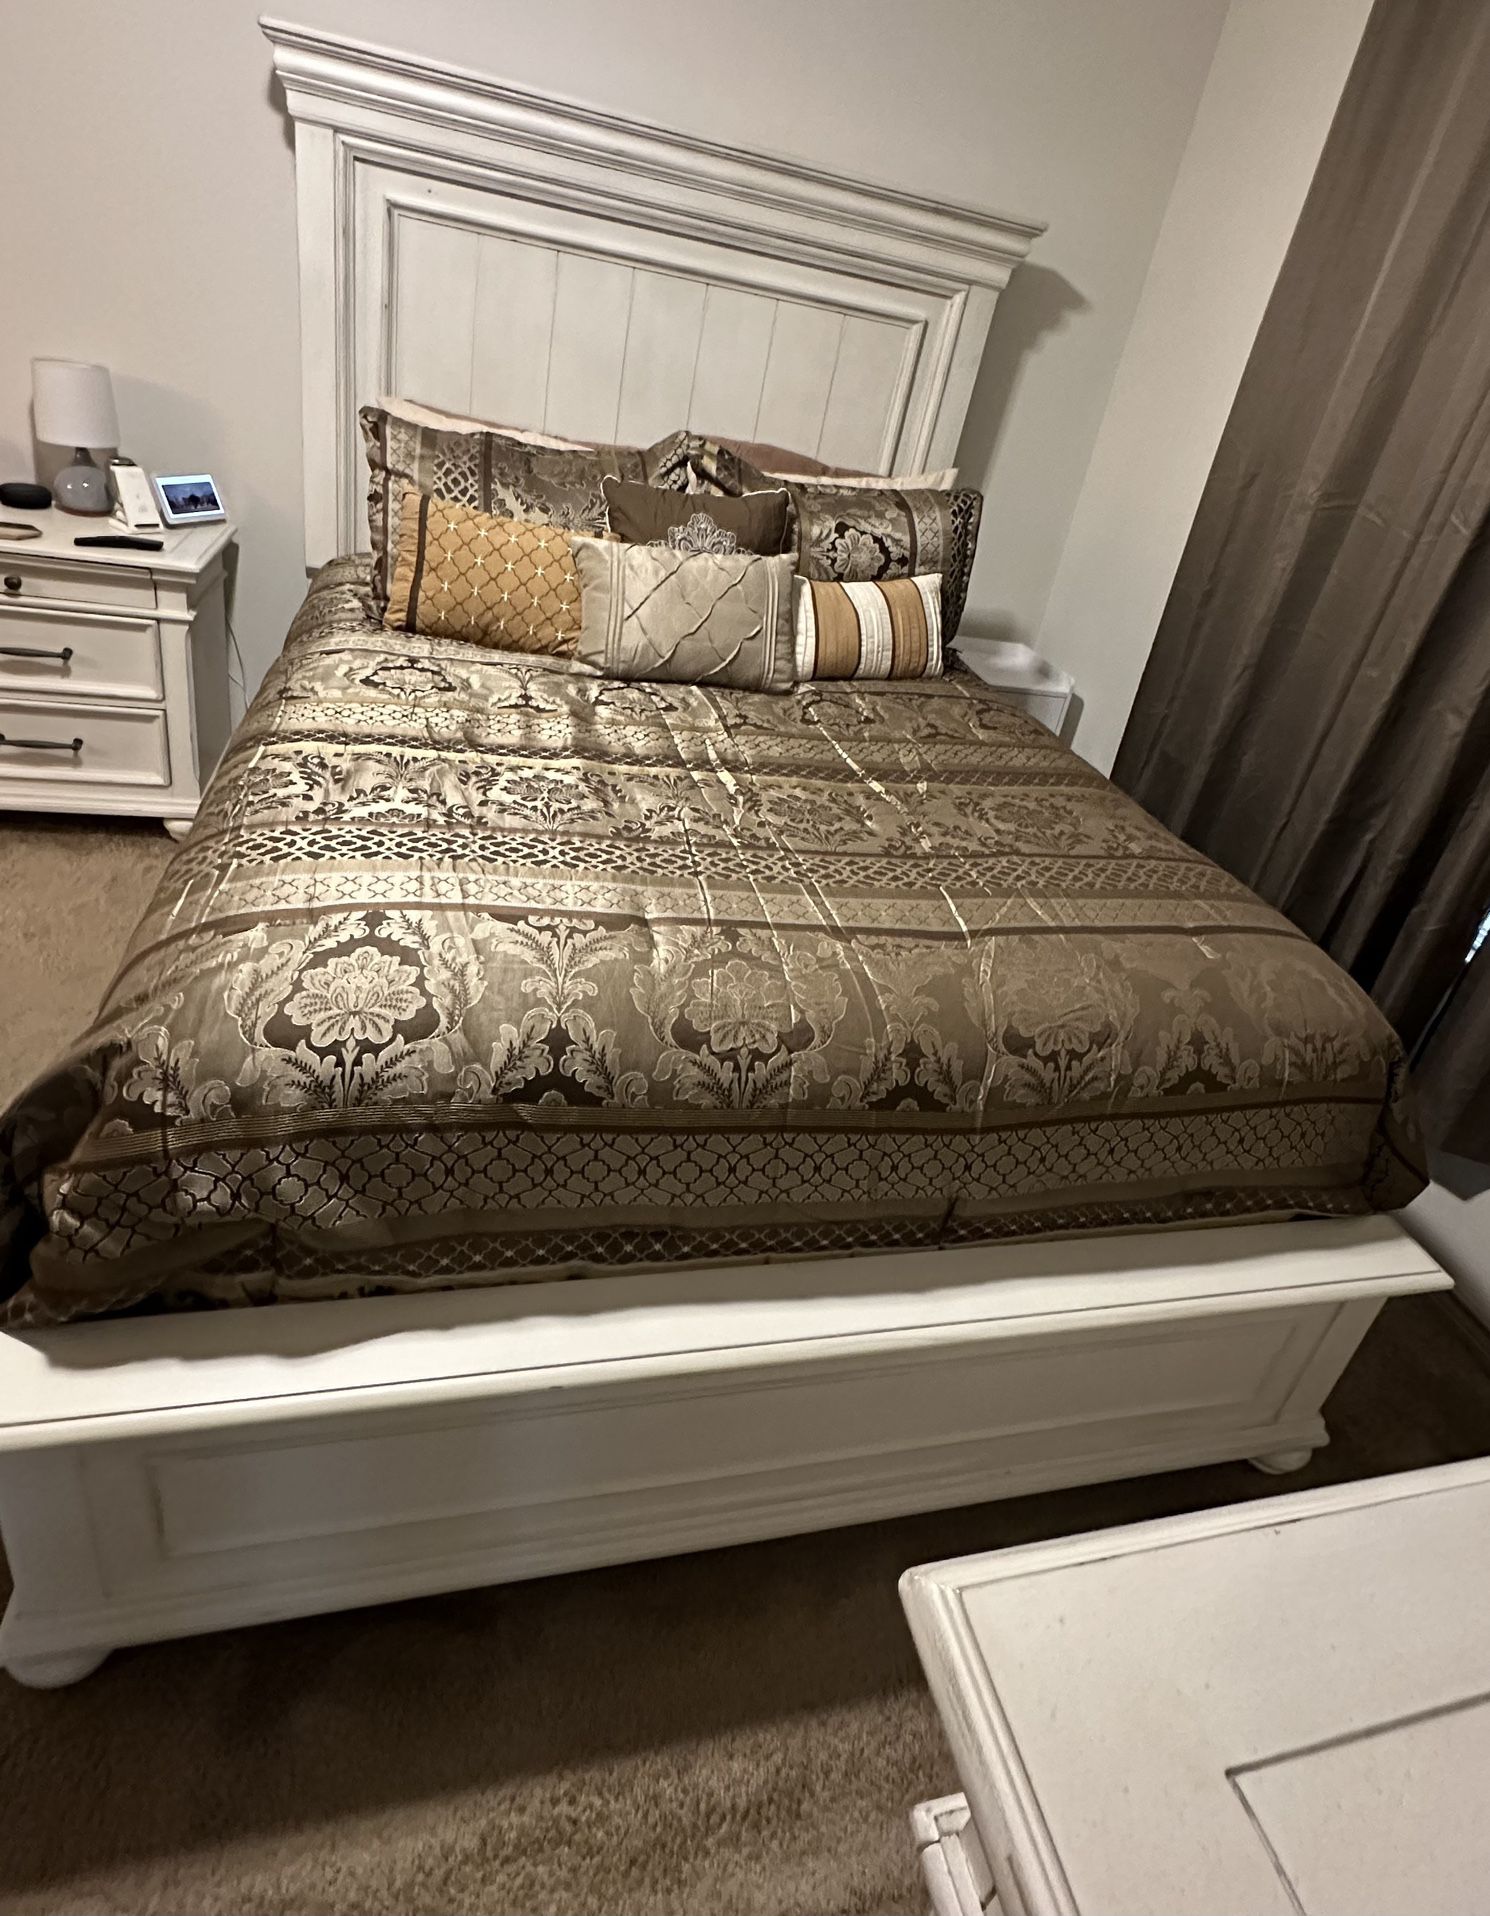 Queen Bedroom Set-mattresses NOT Included. 